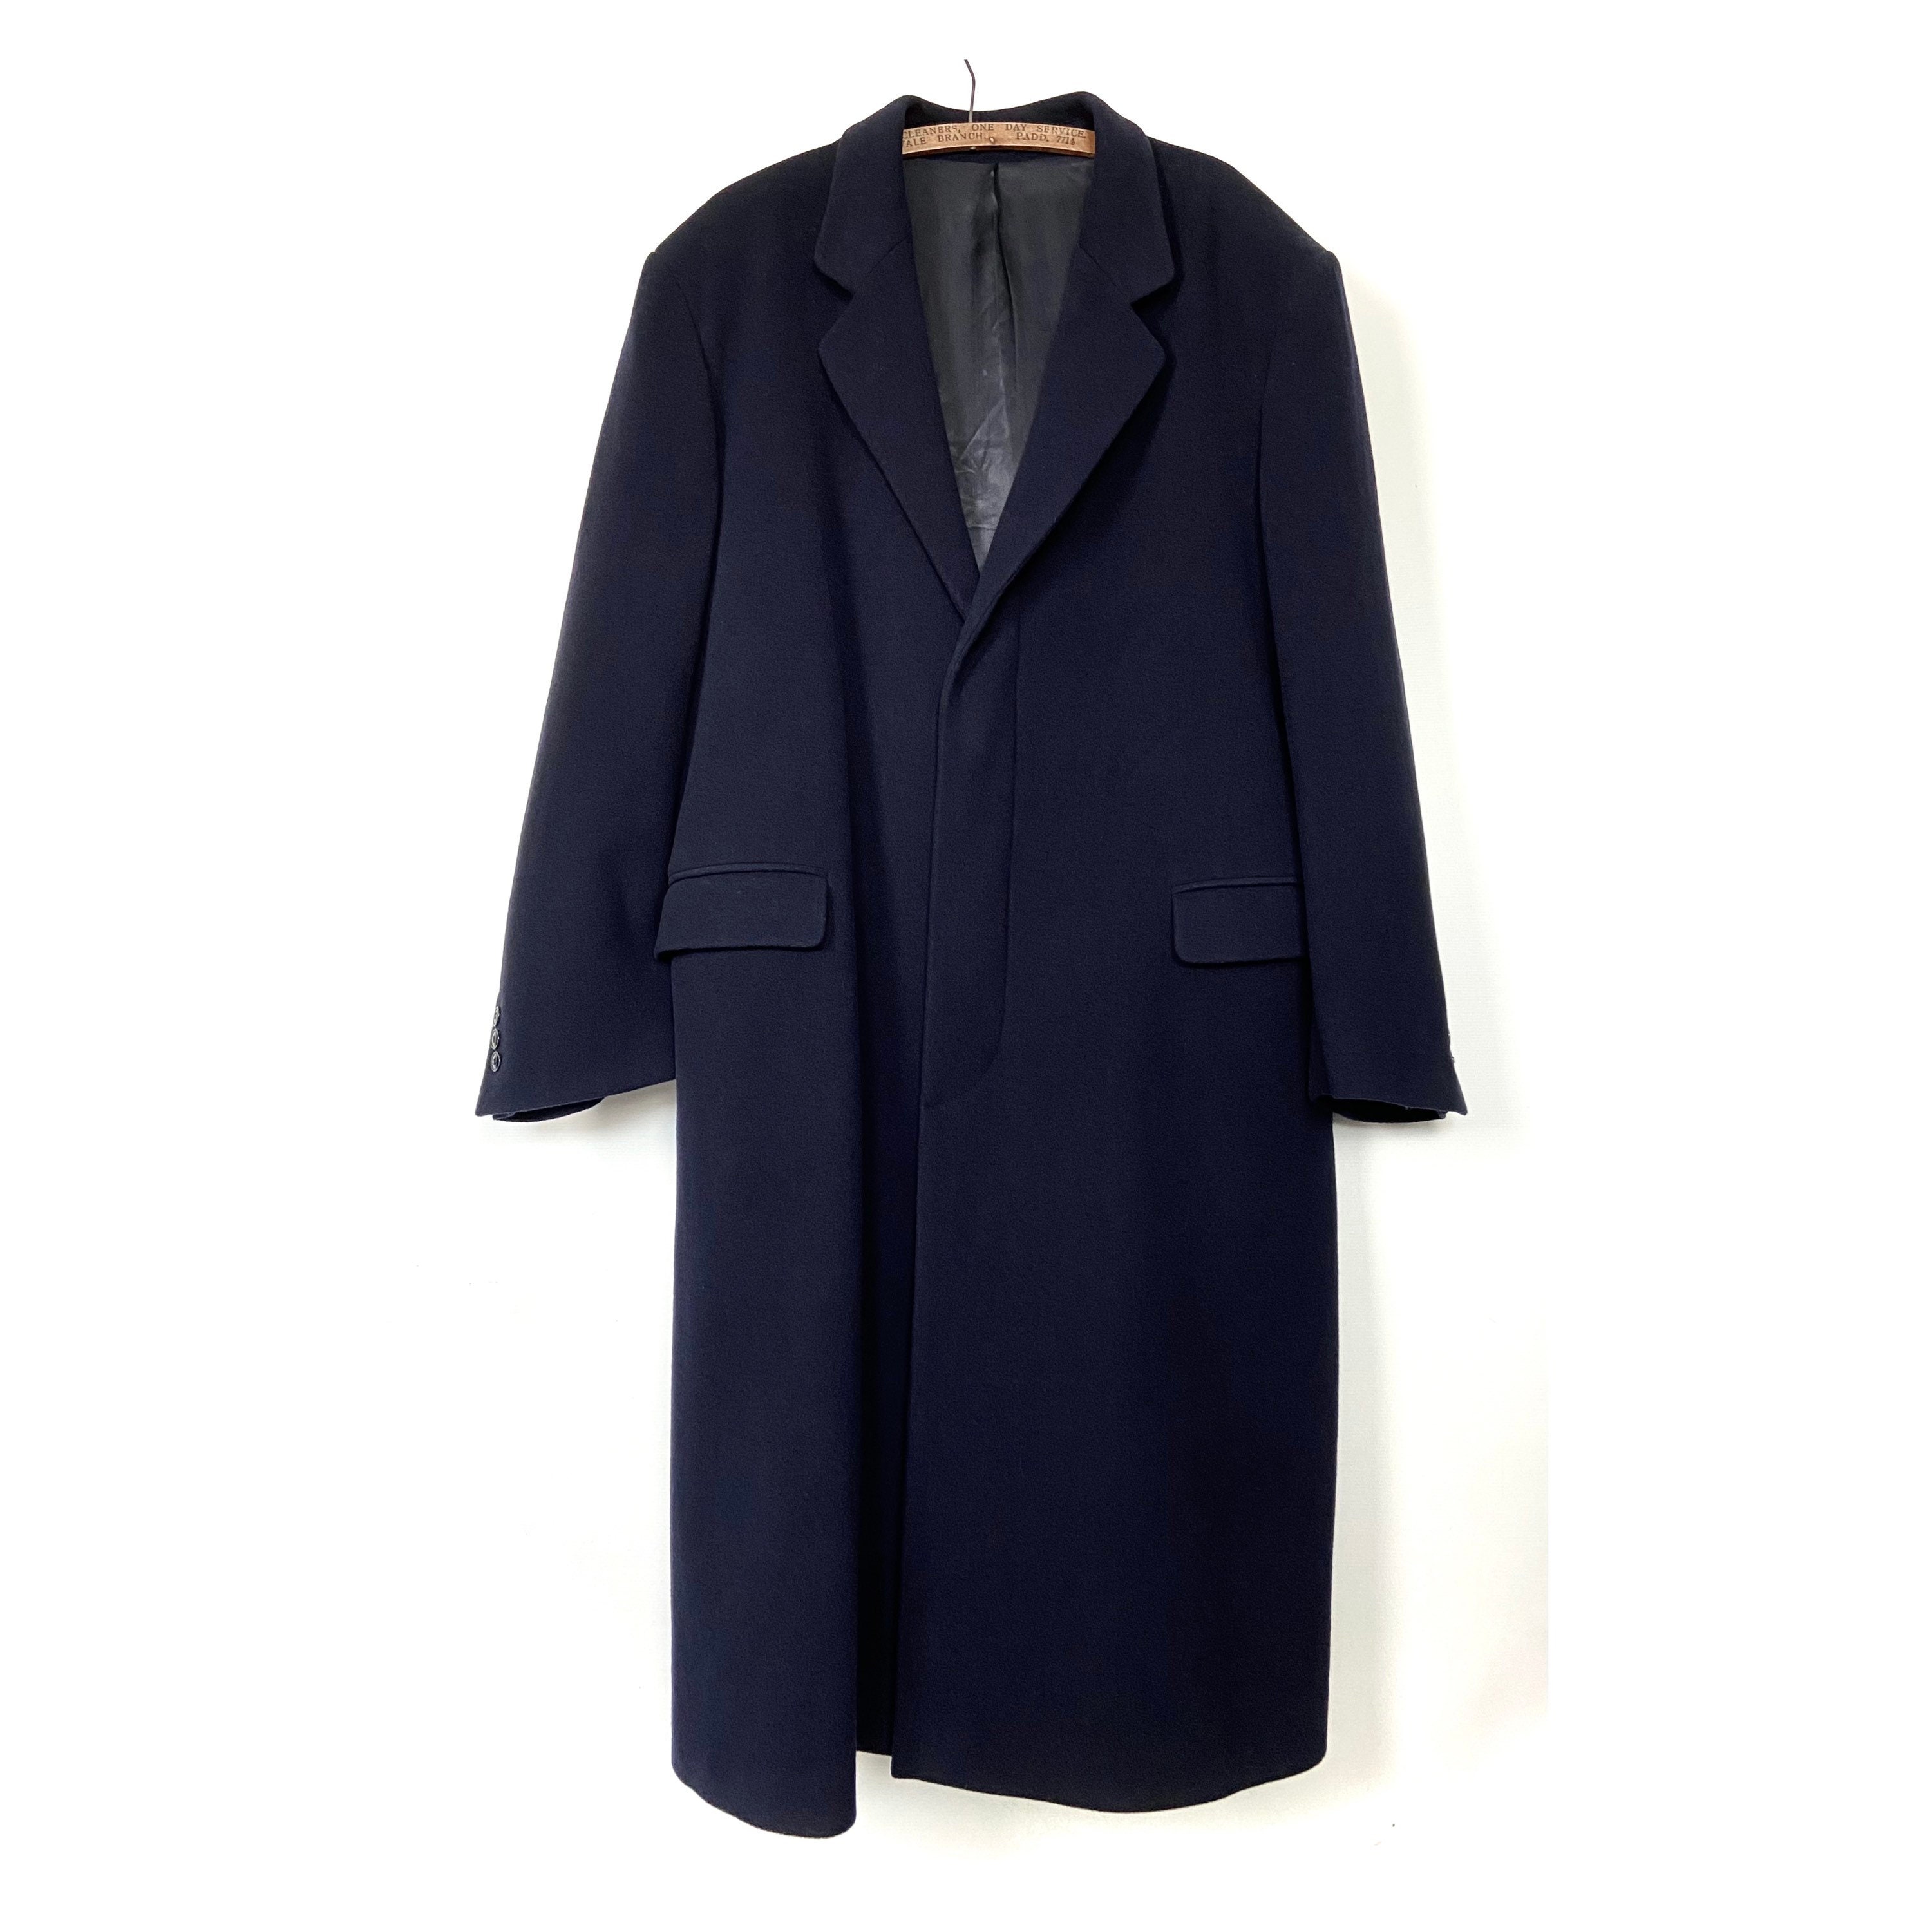 Elegant Navy Blue Mens Overcoat. Wool Blend Classic Mens - Etsy UK